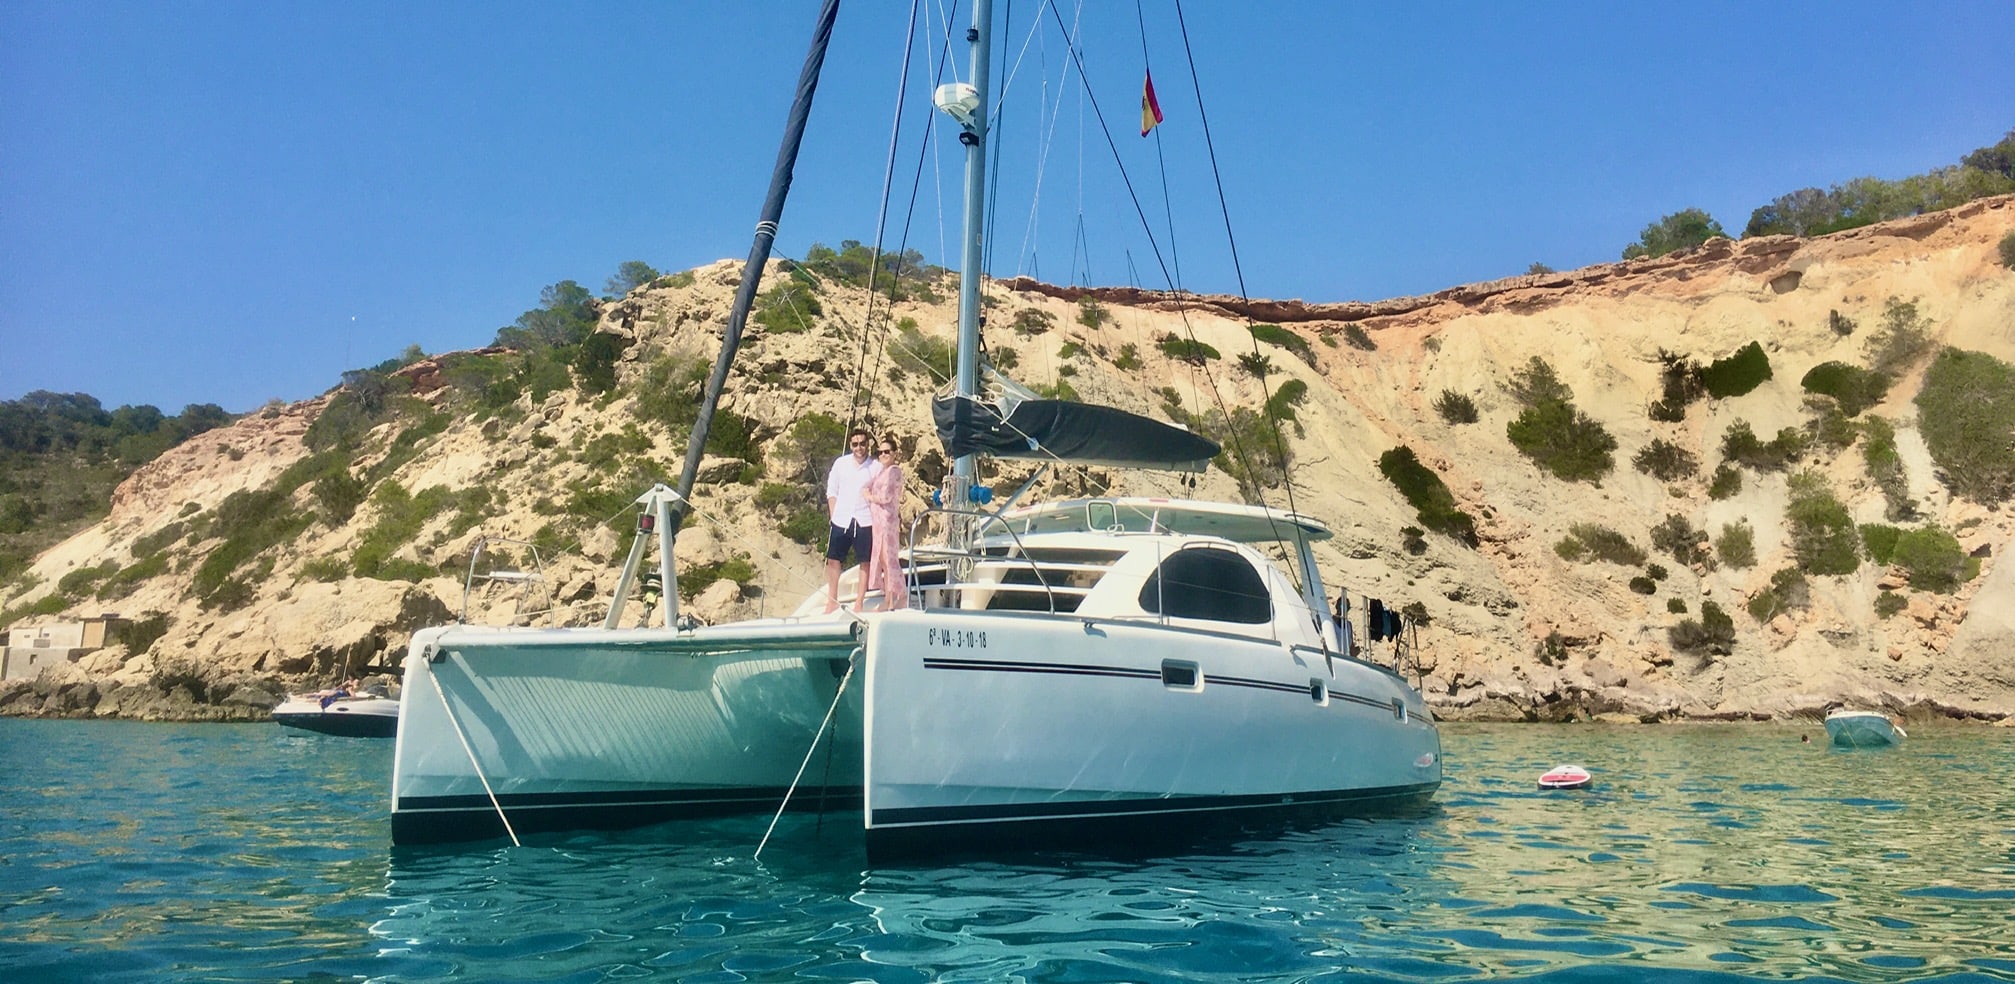 Voyage de noces à Ibiza sur un catamaran. Le Catamaran